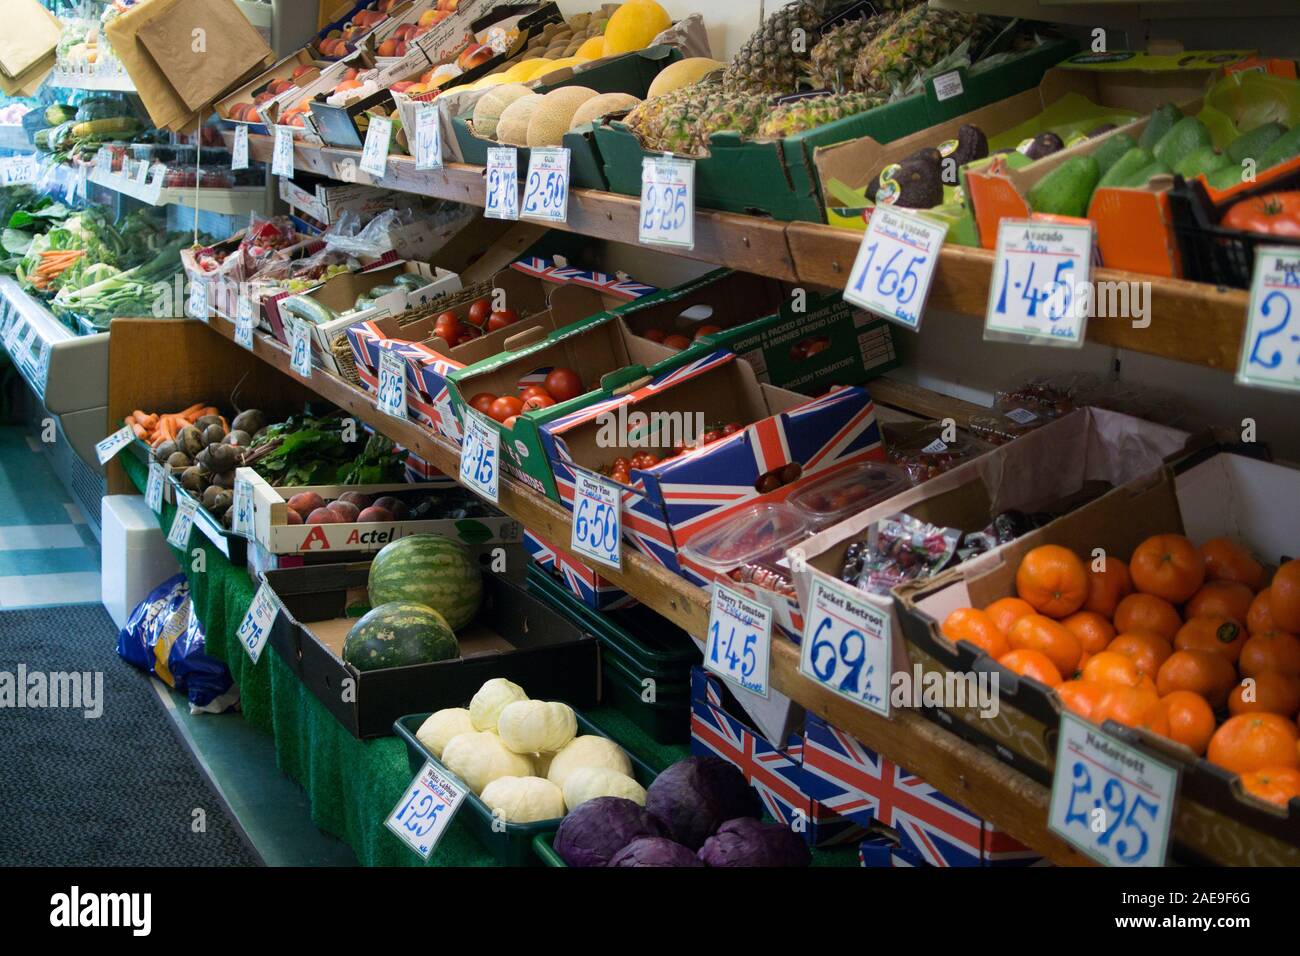 La boutique de fruits - famille indépendante géré Green Grocer dans la campagne Berkshire, Angleterre - rangées de boîtes de produits frais sur les étagères. Banque D'Images